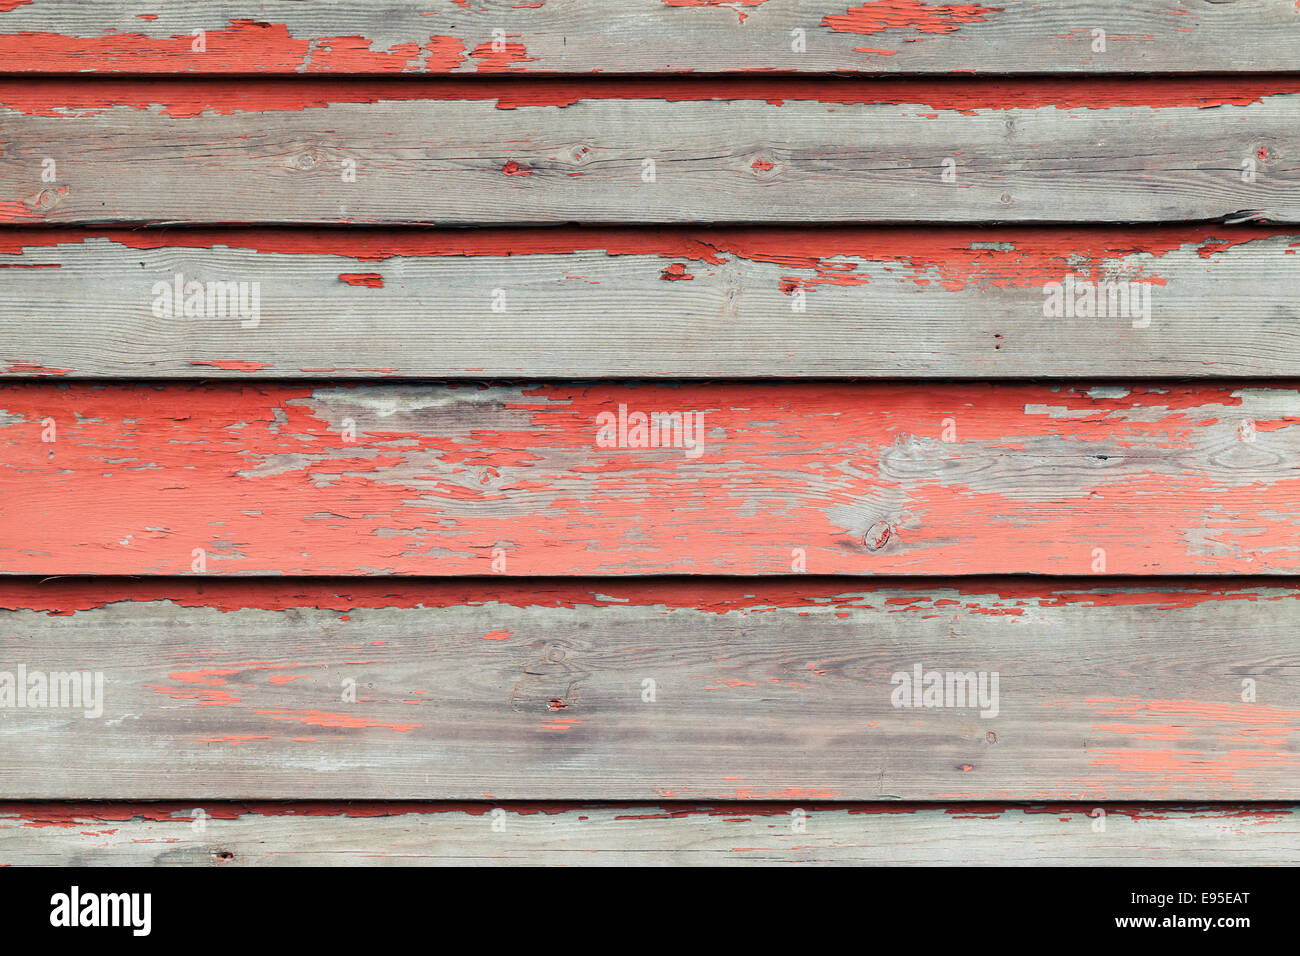 Viejas paredes de madera con pintura roja, vintage textura fotográfica de fondo Foto de stock